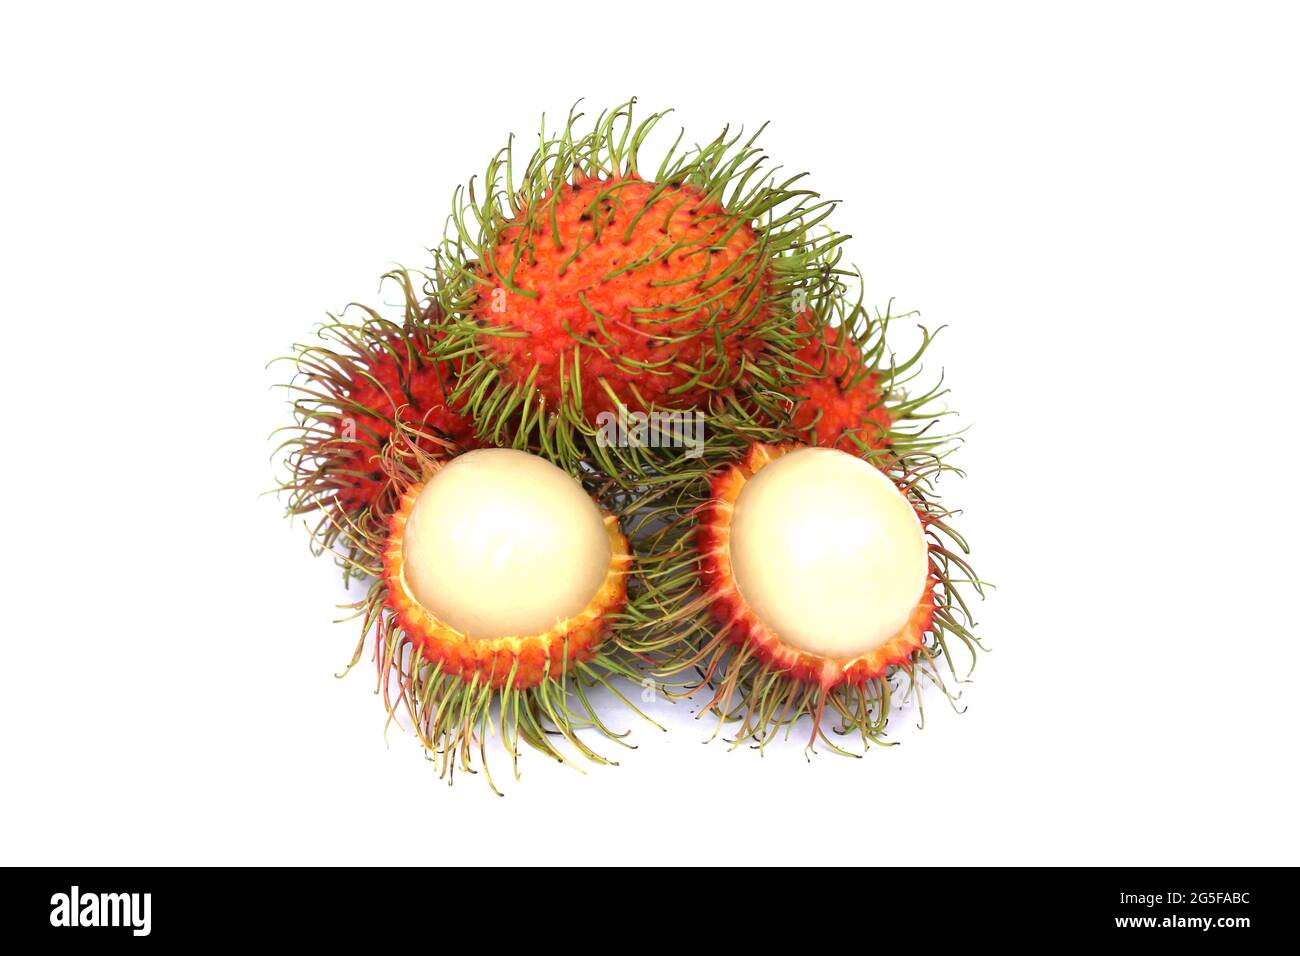 Le rambutan, un fruit populaire en Thaïlande, a un goût sucré, isolé sur fond blanc. Banque D'Images